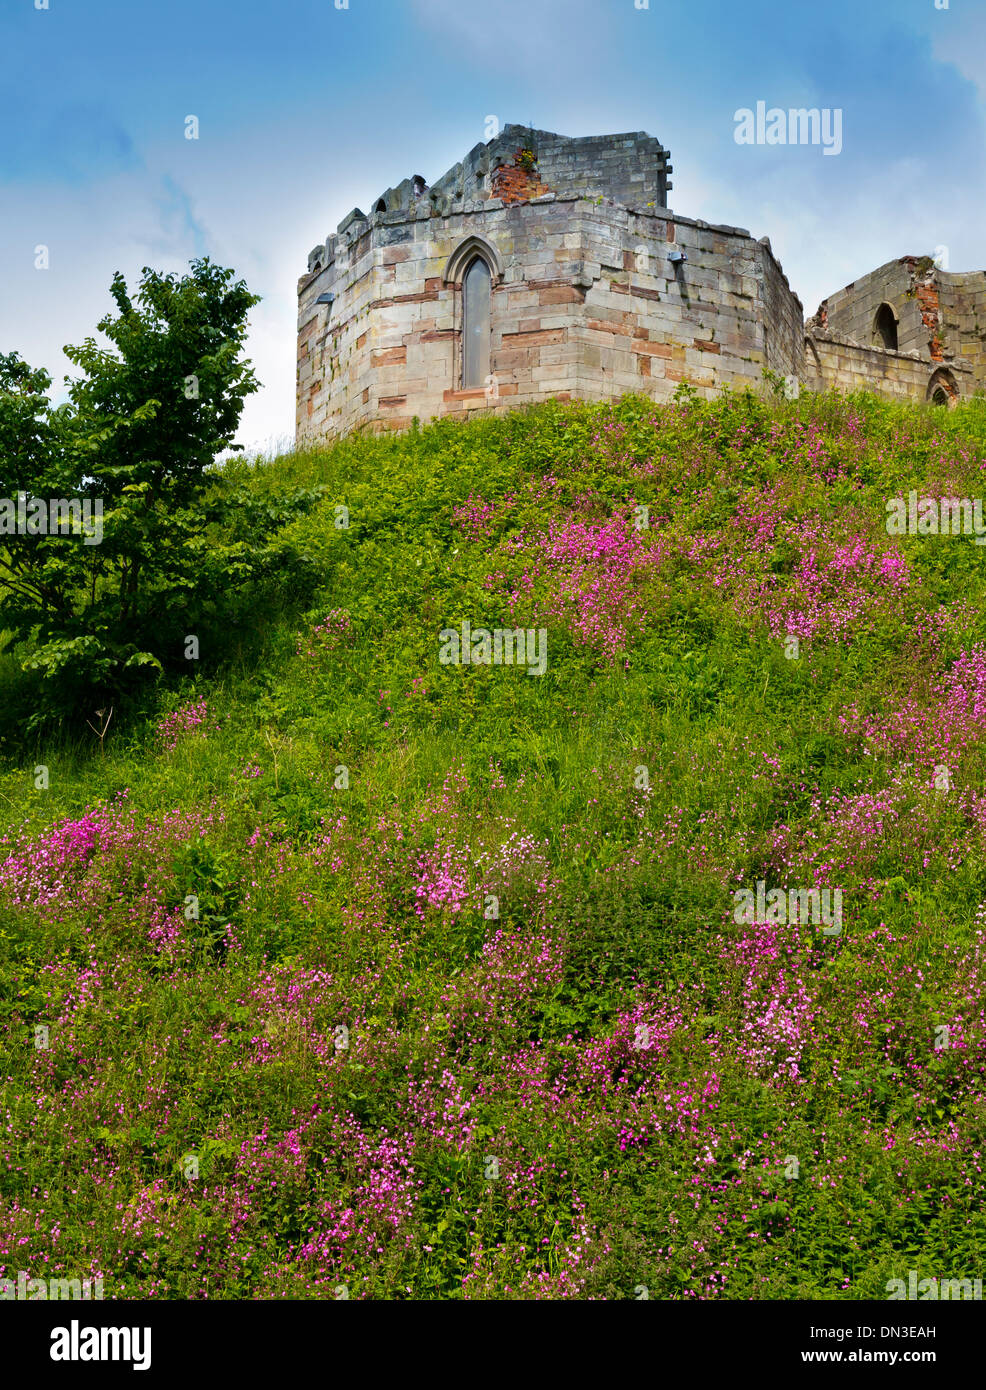 Les ruines de château de Stafford Staffordshire England UK un donjon de pierre néo-gothique construite sur les fondations médiévales d'origine Banque D'Images